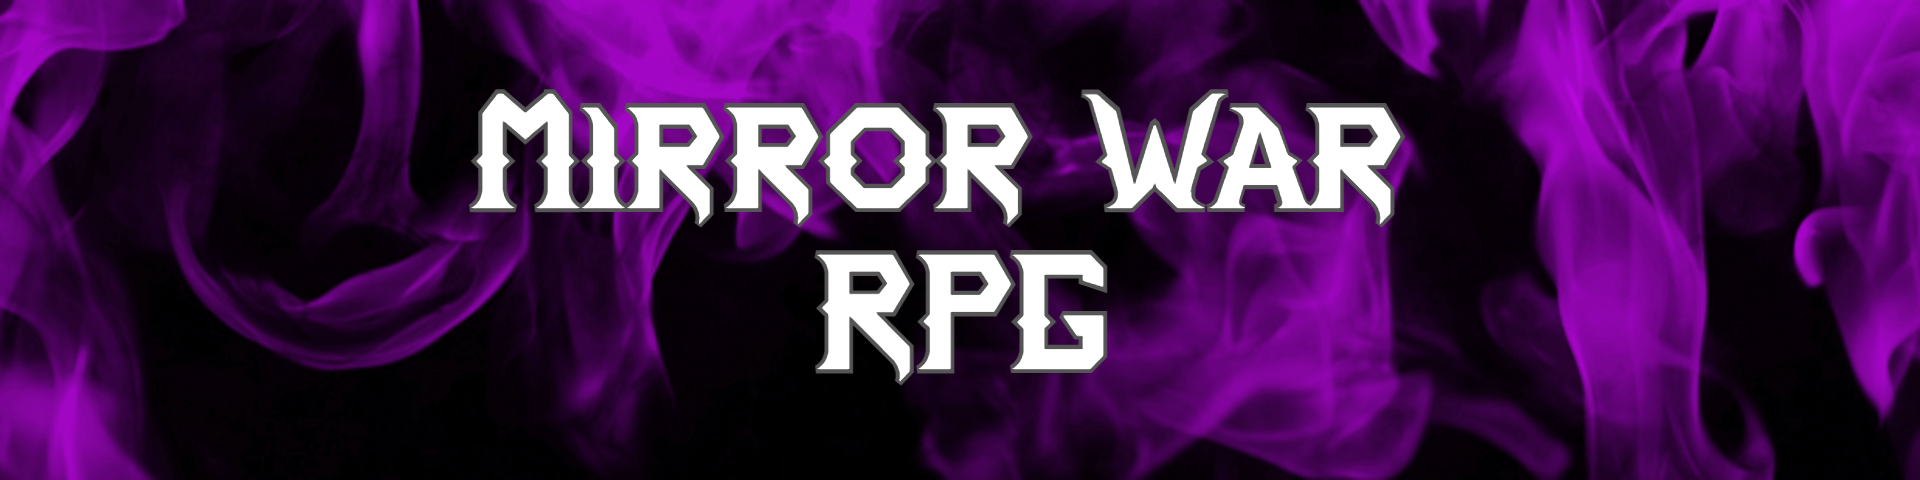 Mirror War RPG